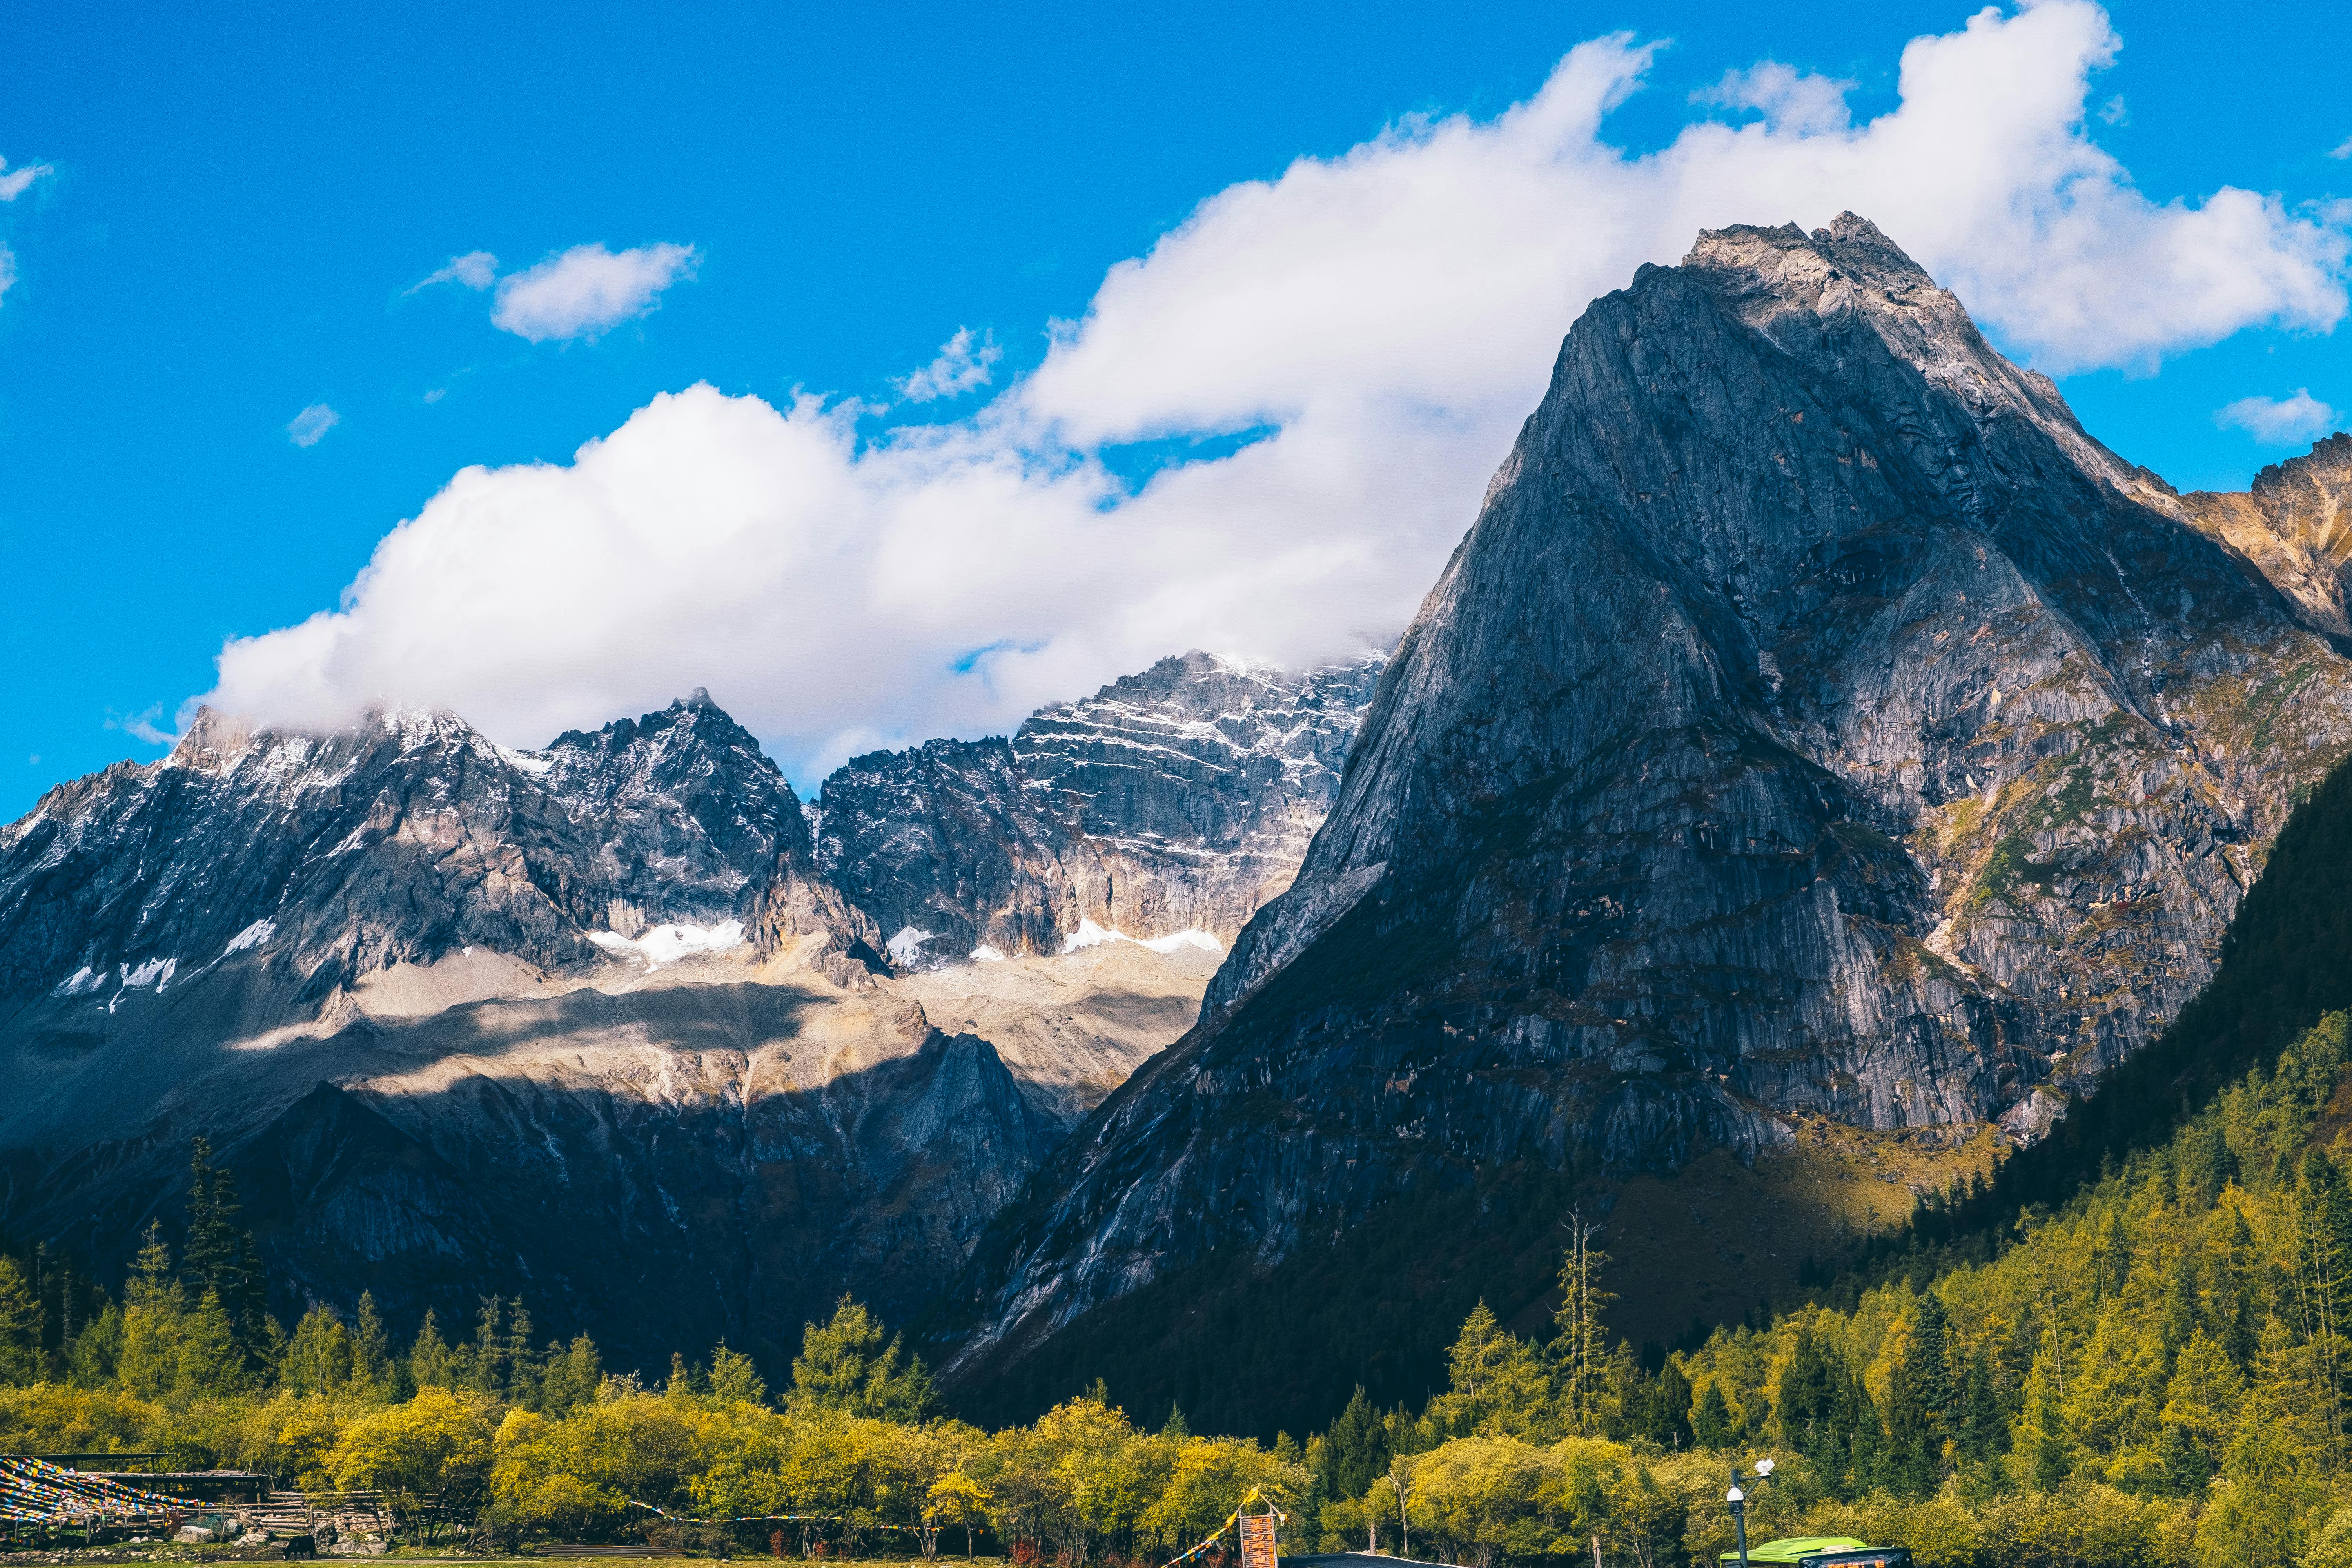 + ảnh đẹp nhất về Núi Rừng · Tải xuống miễn phí 100% · Ảnh có sẵn  của Pexels